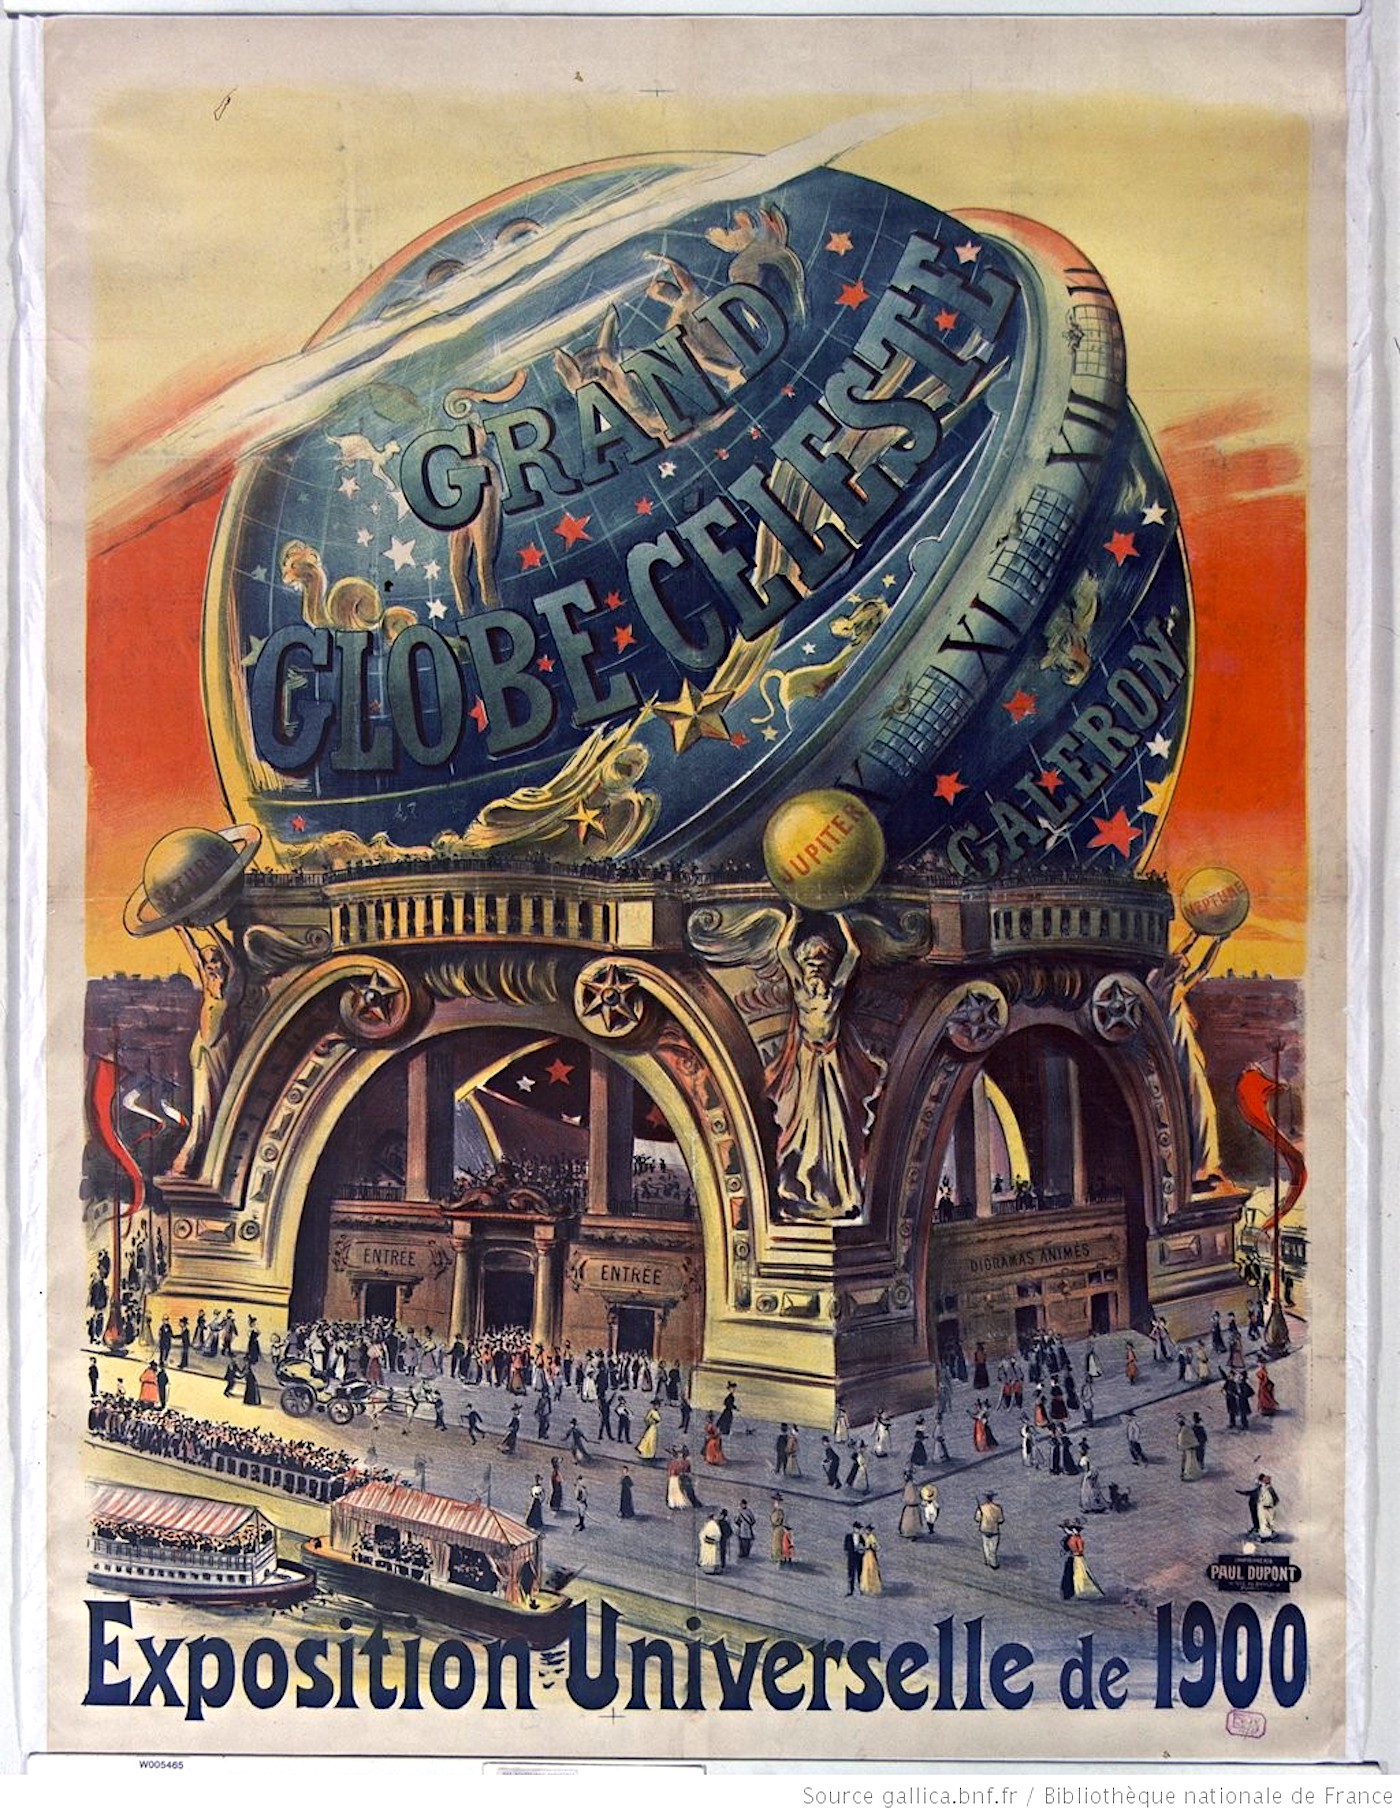  Affiche de l’Exposition Universelle de 1900.